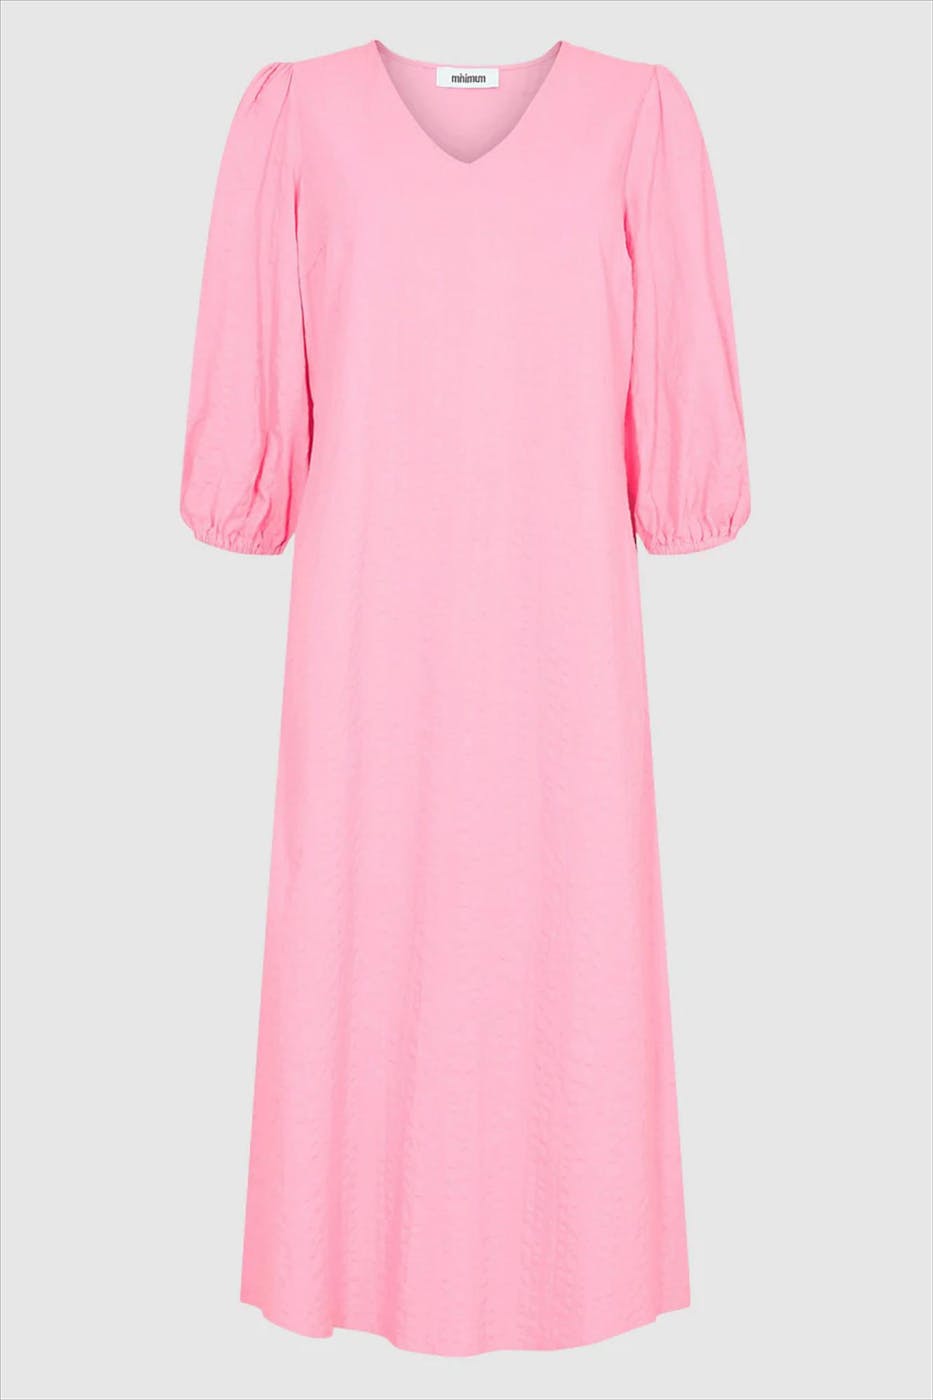 Minimum - Roze Felani jurk